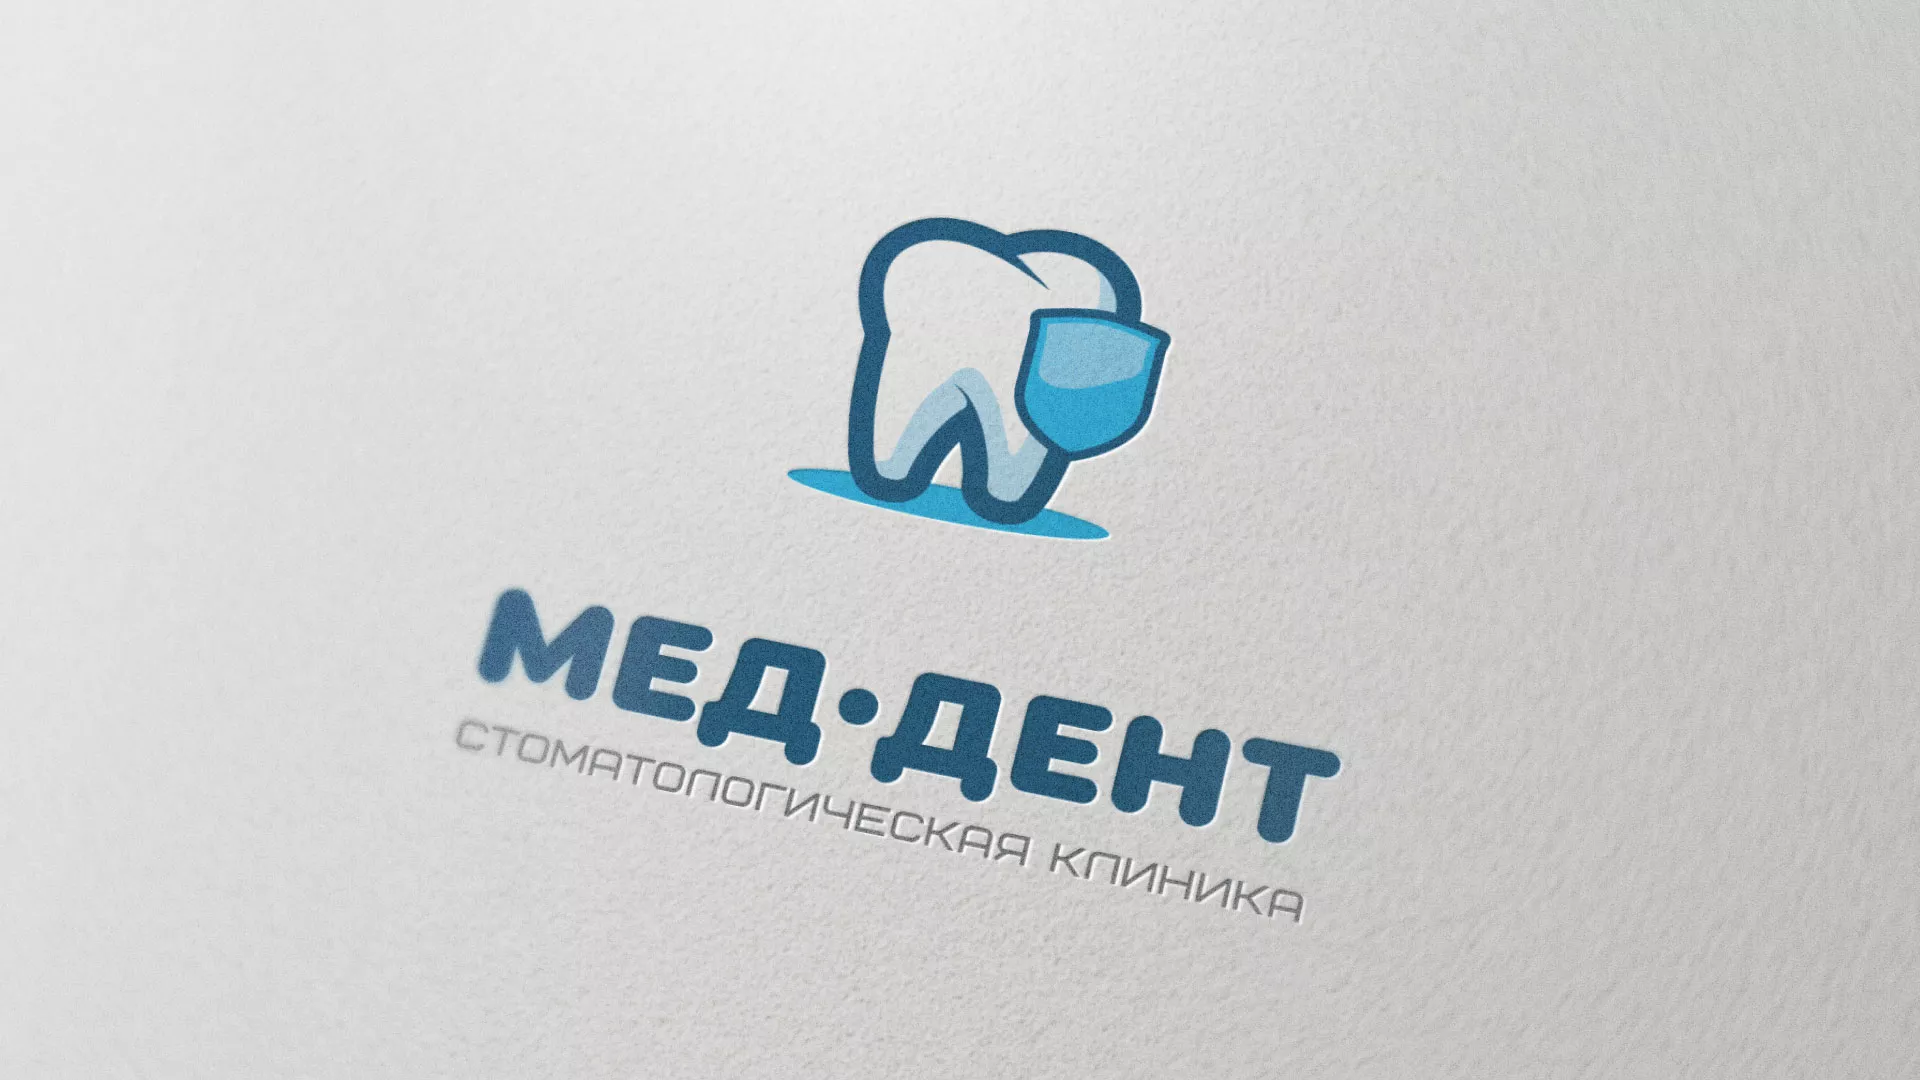 Разработка логотипа стоматологической клиники «МЕД-ДЕНТ» в Усть-Катаве